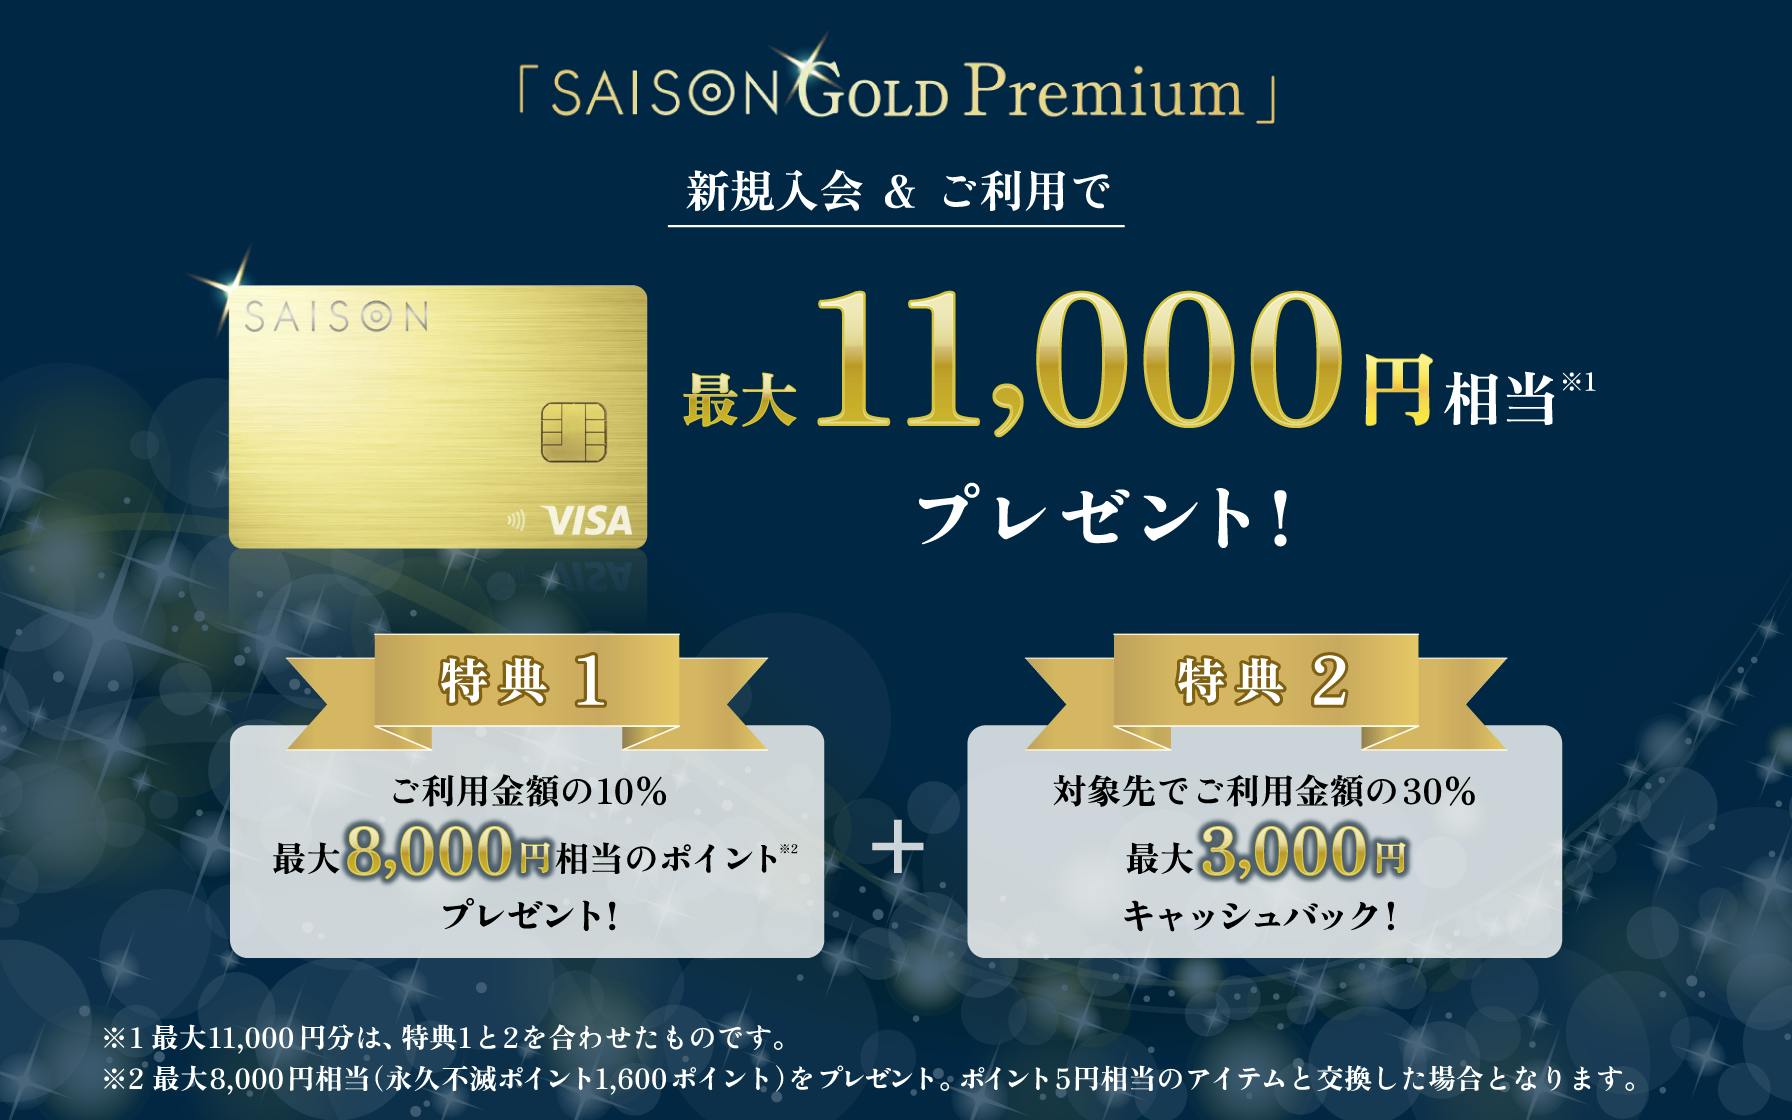 「SAISON GOLD Premium」VISA・JCBブランドごとに選べる30%キャッシュバックキャンペーン